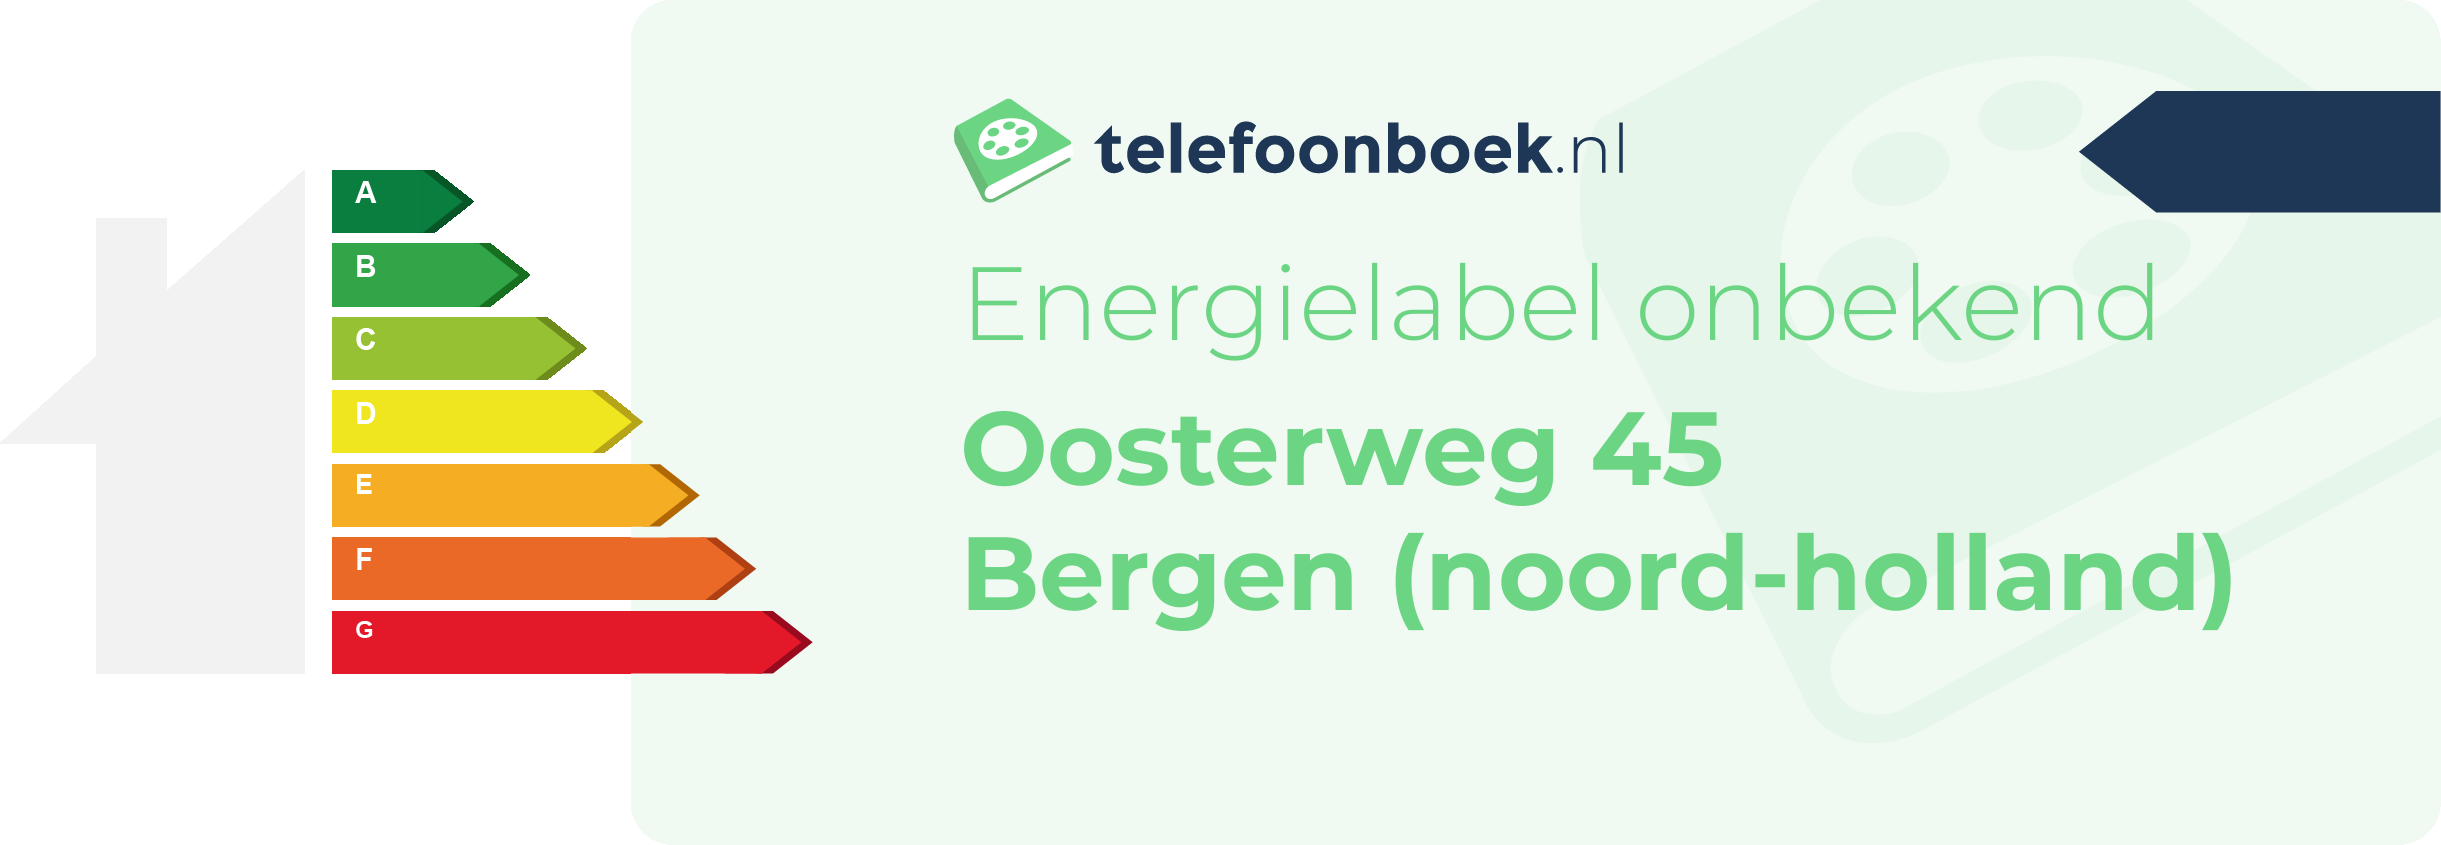 Energielabel Oosterweg 45 Bergen (Noord-Holland)